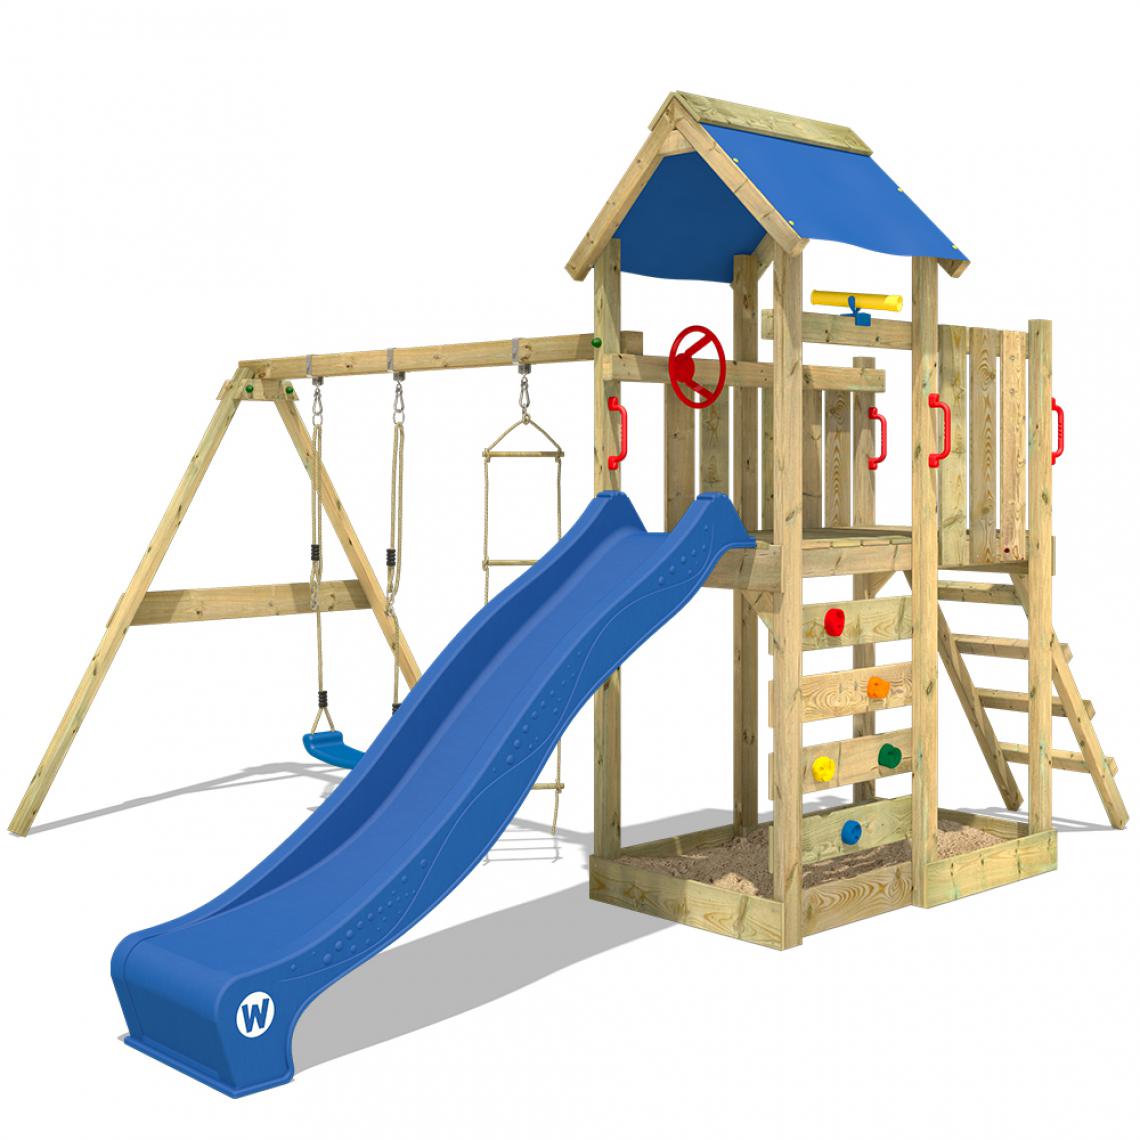 Wickey - Aire de jeux Portique bois MultiFlyer avec balançoire et toboggan bleu Maison enfant extérieure avec bac à sable, échelle d'escalade & accessoires de jeux - Aire de jeux